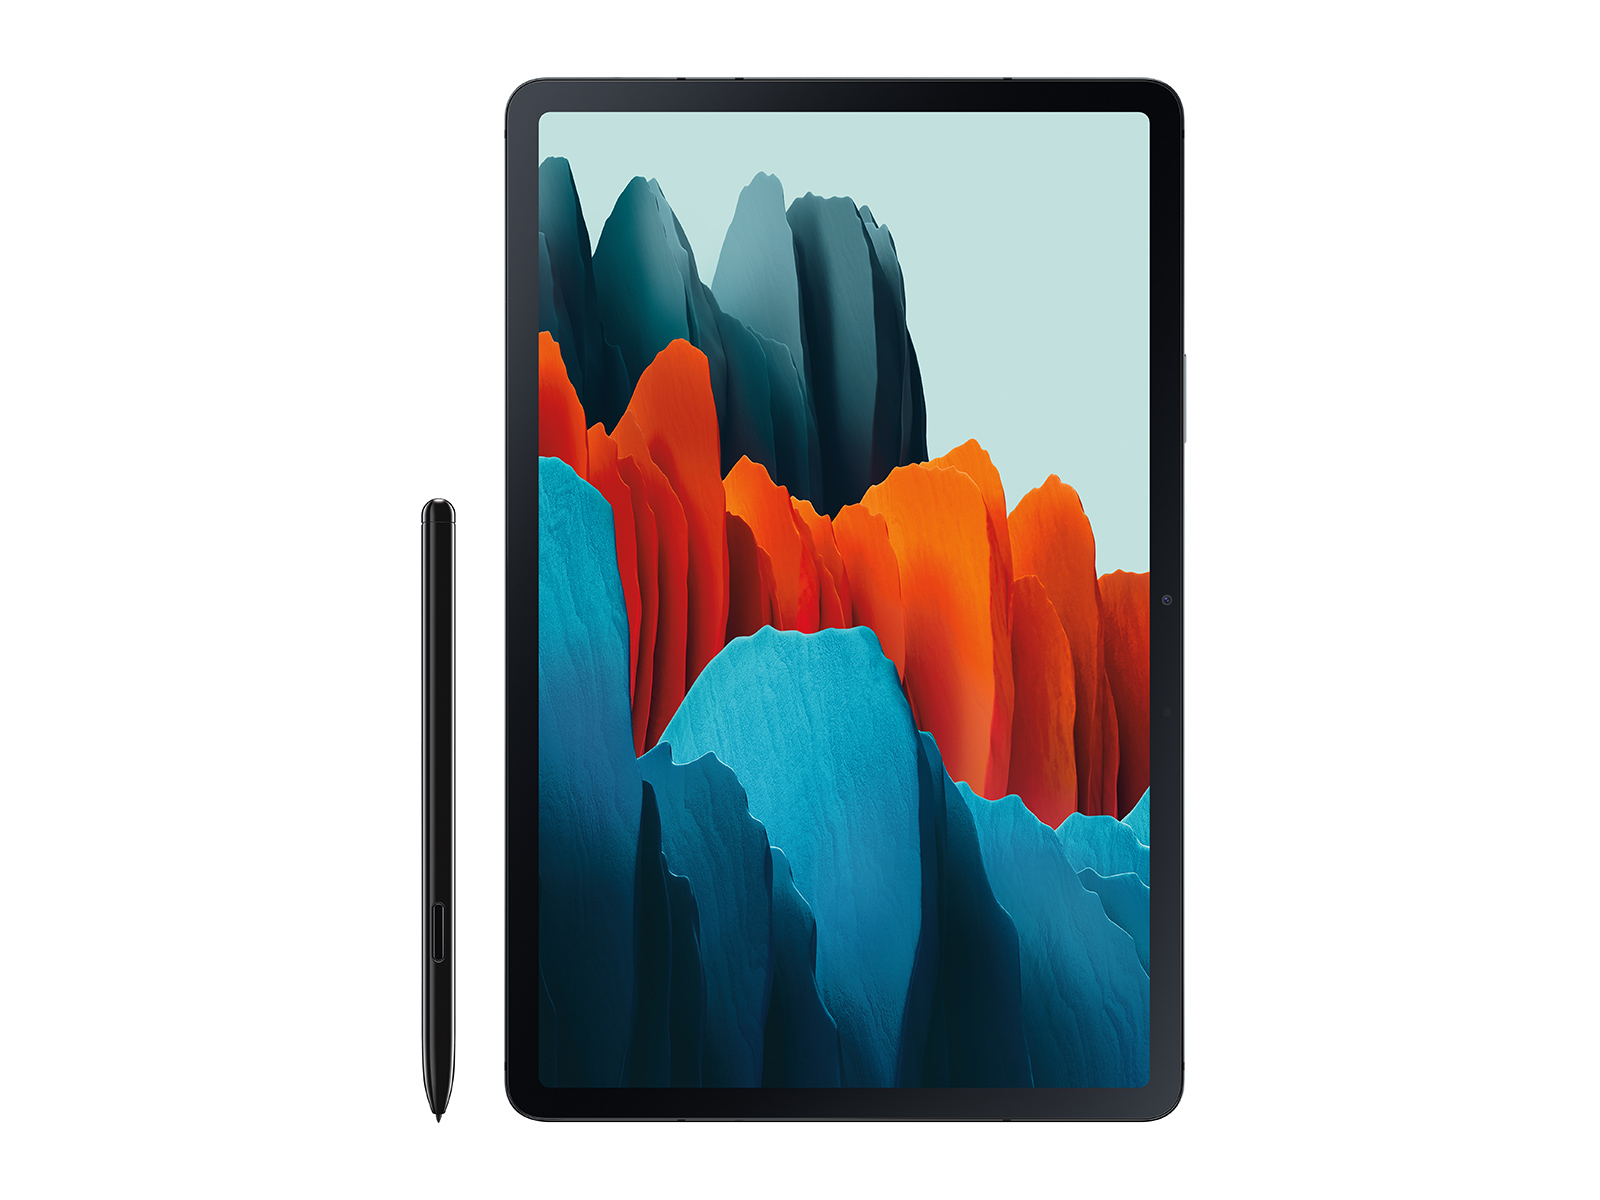 Galaxy Tab S7, 256GB, Mystic Black Tablets - SM-T870NZKEXAR 